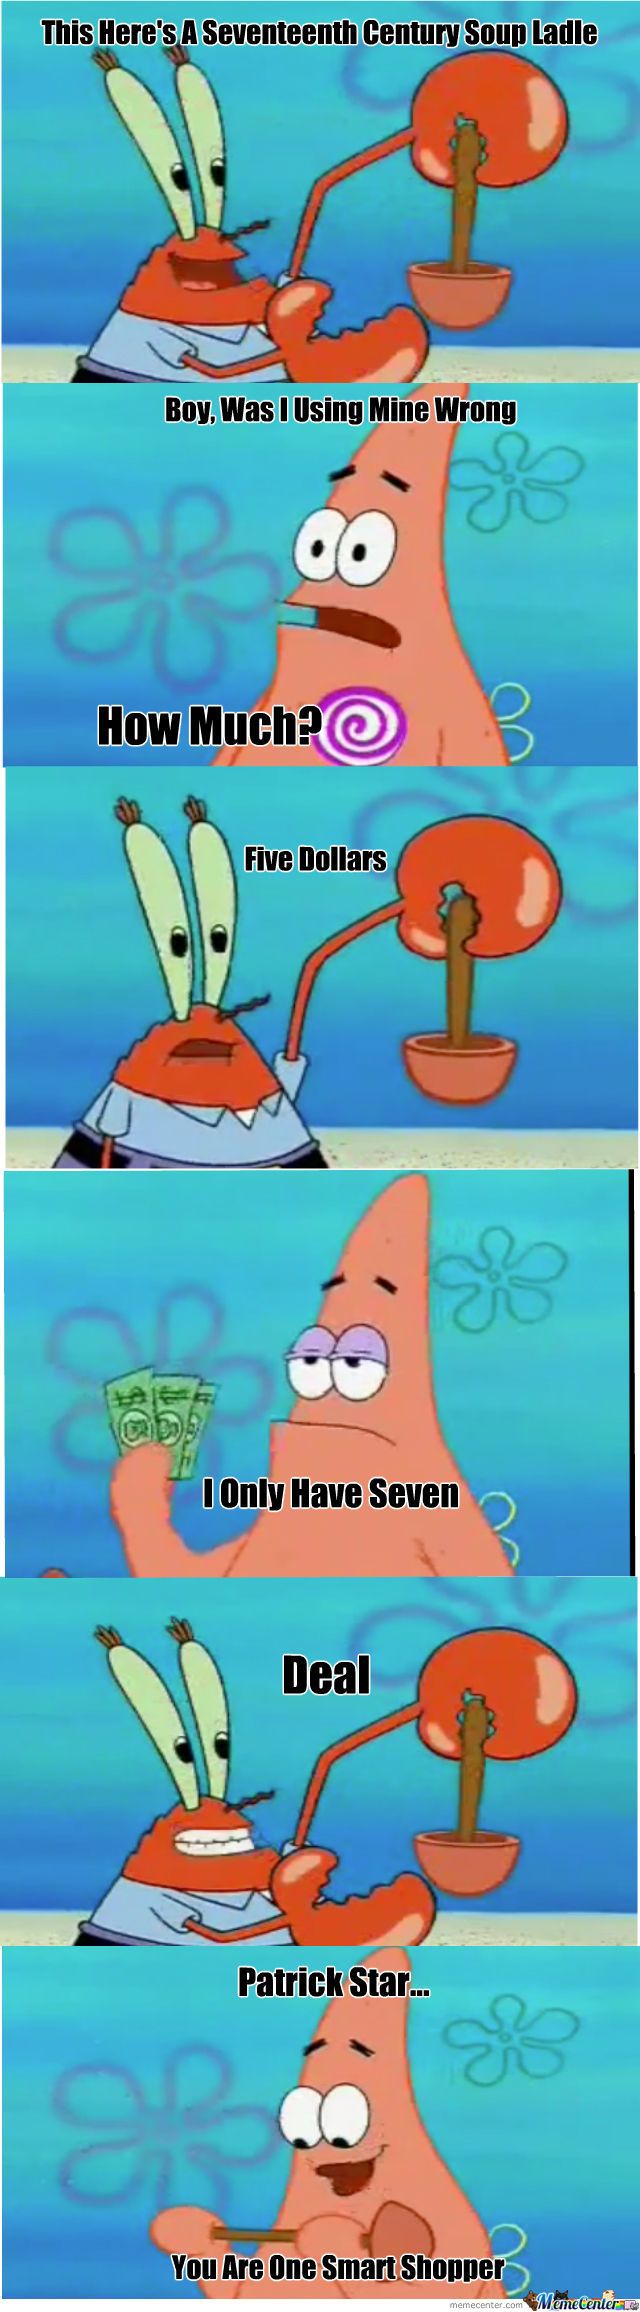 Patrick star Memes